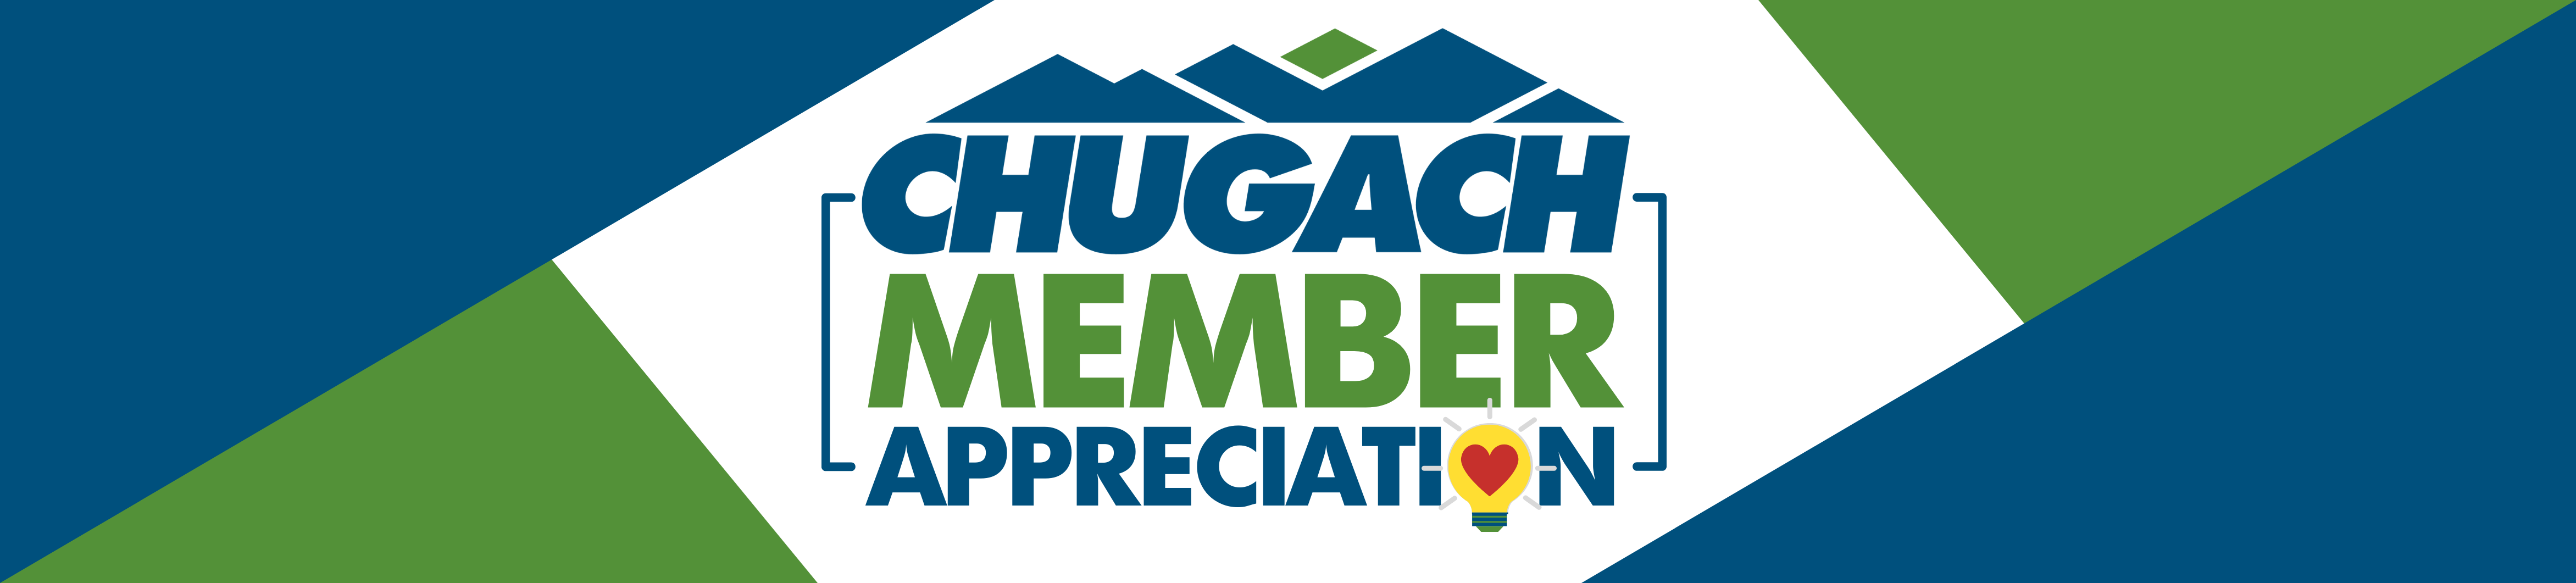 Chugach Member Appreciation Event